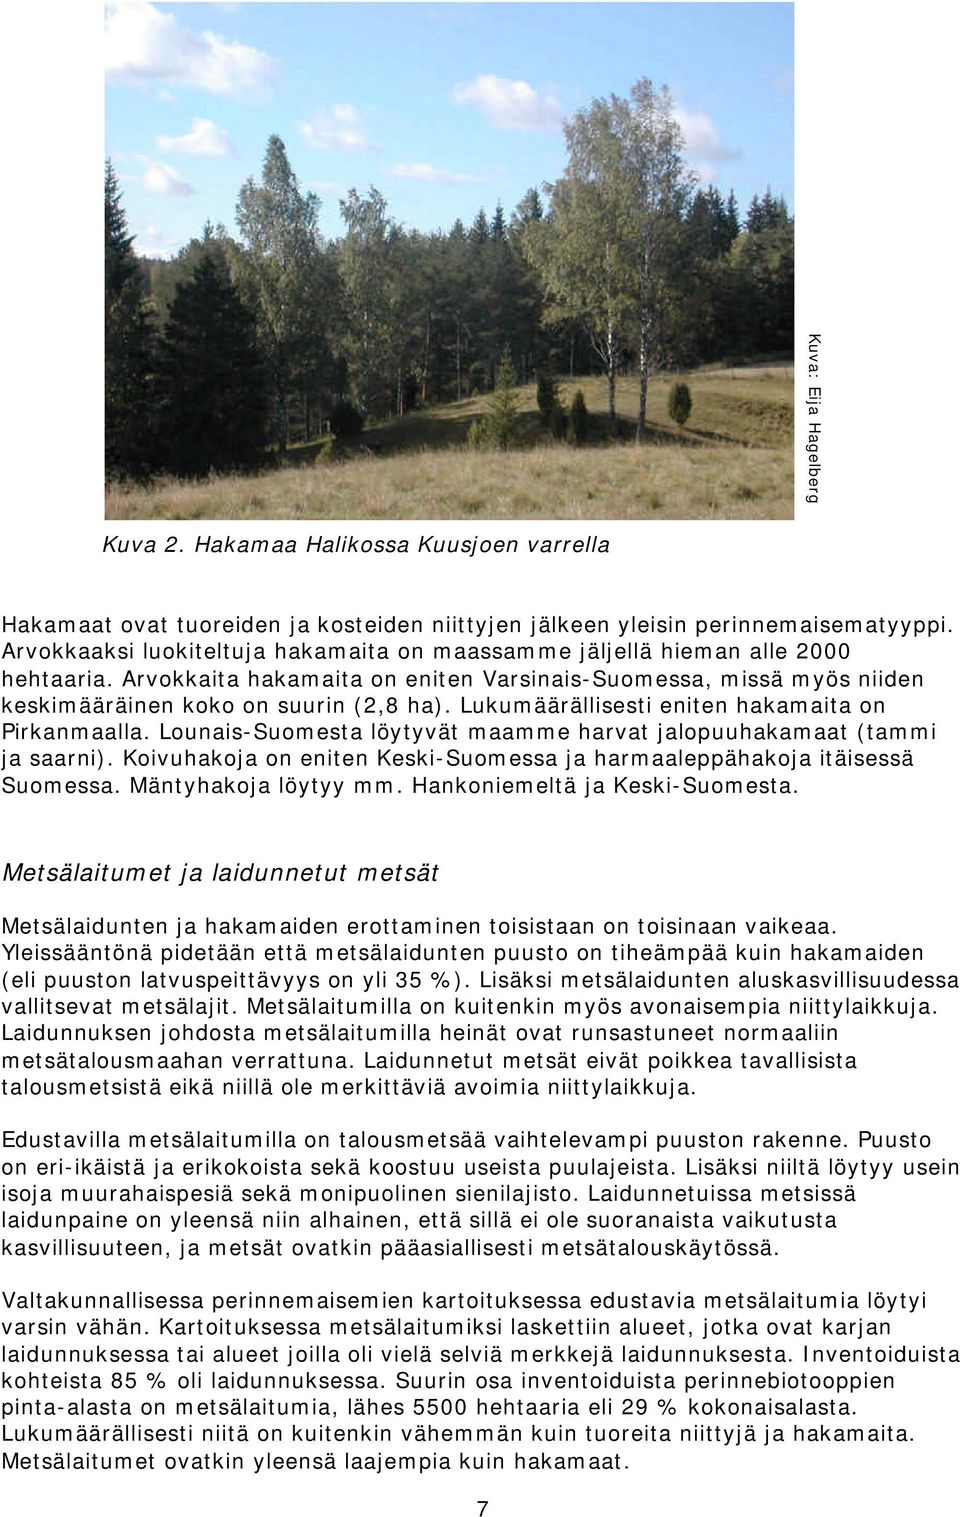 Lukumäärällisesti eniten hakamaita on Pirkanmaalla. Lounais-Suomesta löytyvät maamme harvat jalopuuhakamaat (tammi ja saarni).